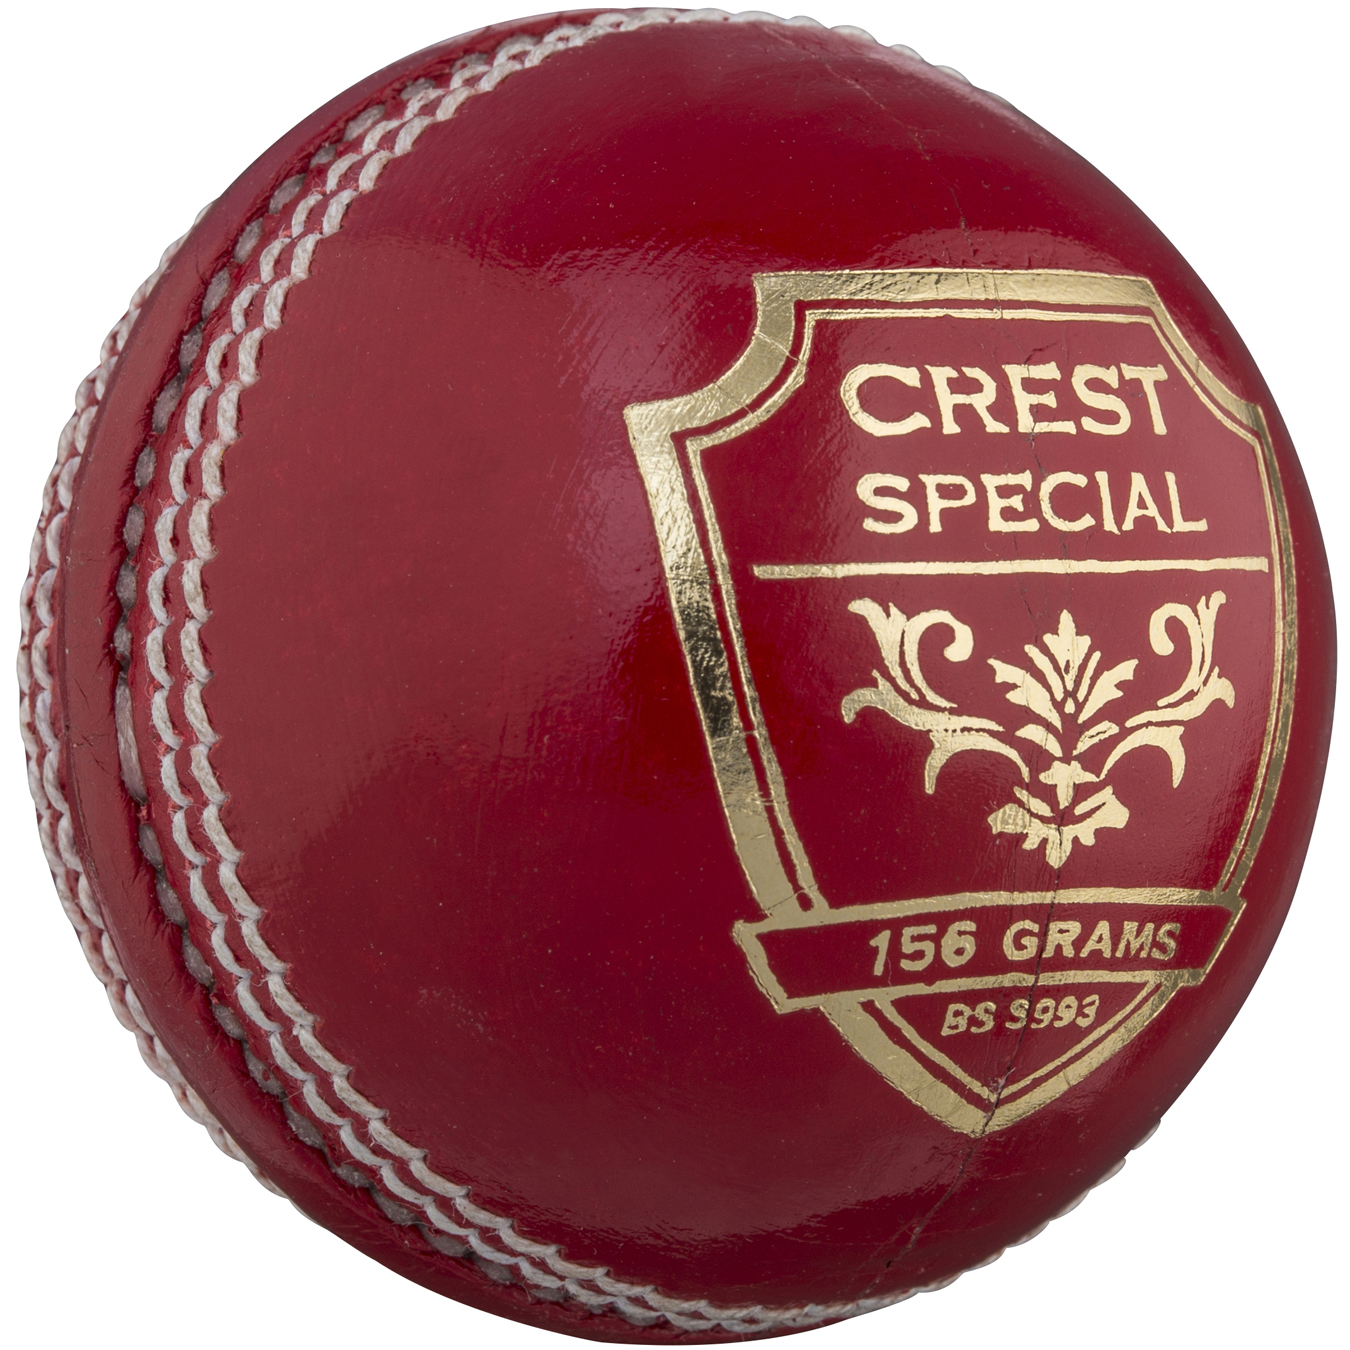 Gray Nicolls Cricket Ball Crest Elite Free Weekday Dispatch 